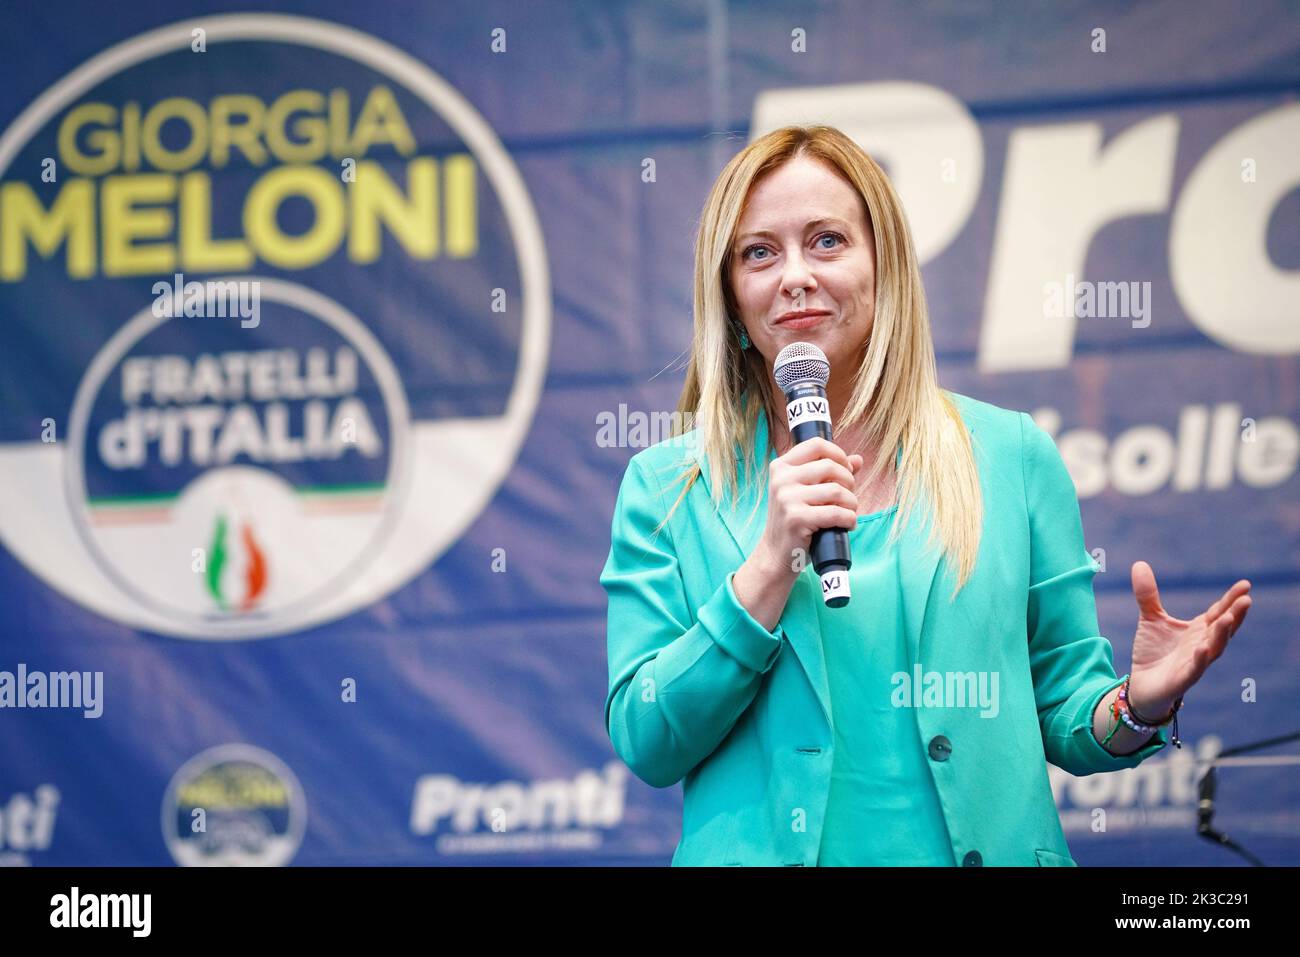 Raduno elettorale di Giorgia Meloni, leader del partito Fratelli d'Italia, candidato al primo posto nelle elezioni politiche. Torino, Italia - Settembre 2022 Foto Stock